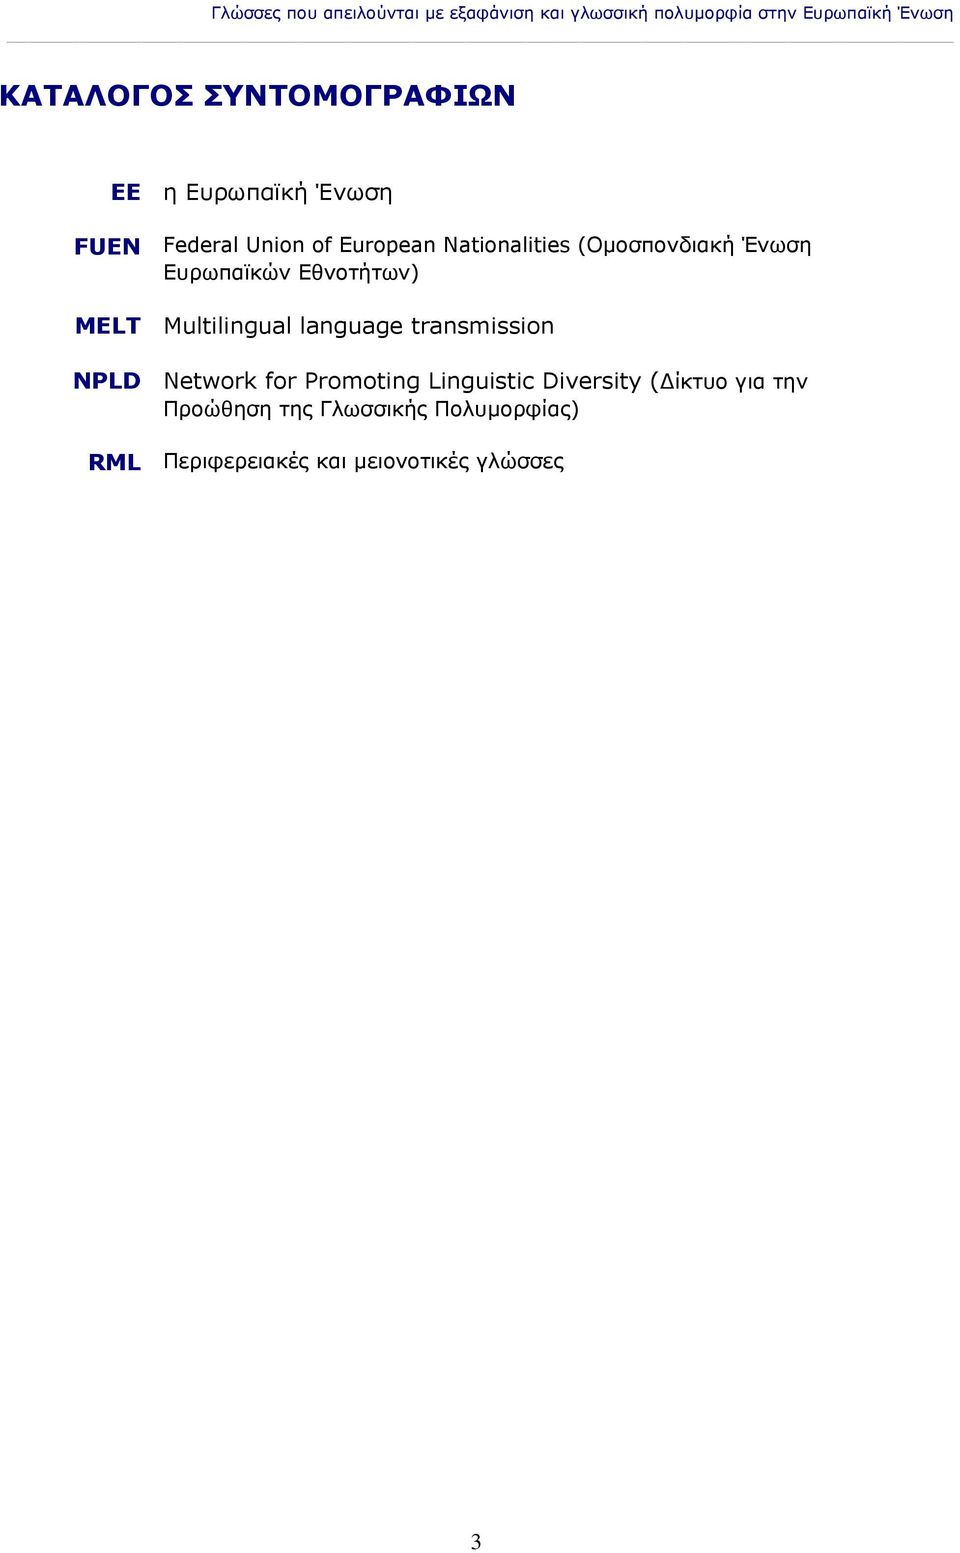 Ένωση Ευρωπαϊκών Εθνοτήτων) MELT Multilingual language transmission NPLD Network for Promoting